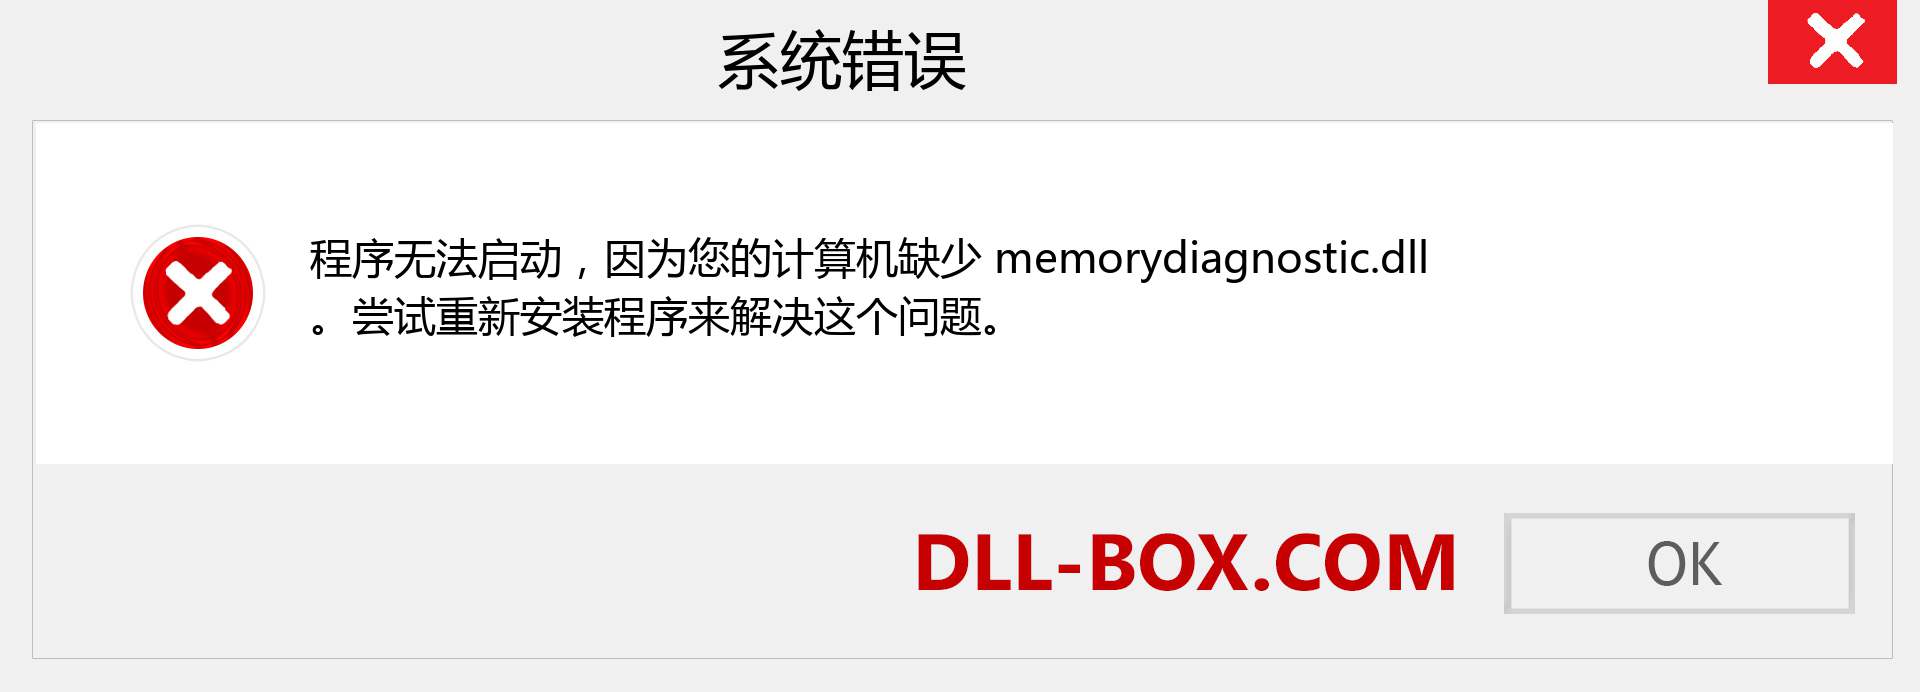 memorydiagnostic.dll 文件丢失？。 适用于 Windows 7、8、10 的下载 - 修复 Windows、照片、图像上的 memorydiagnostic dll 丢失错误